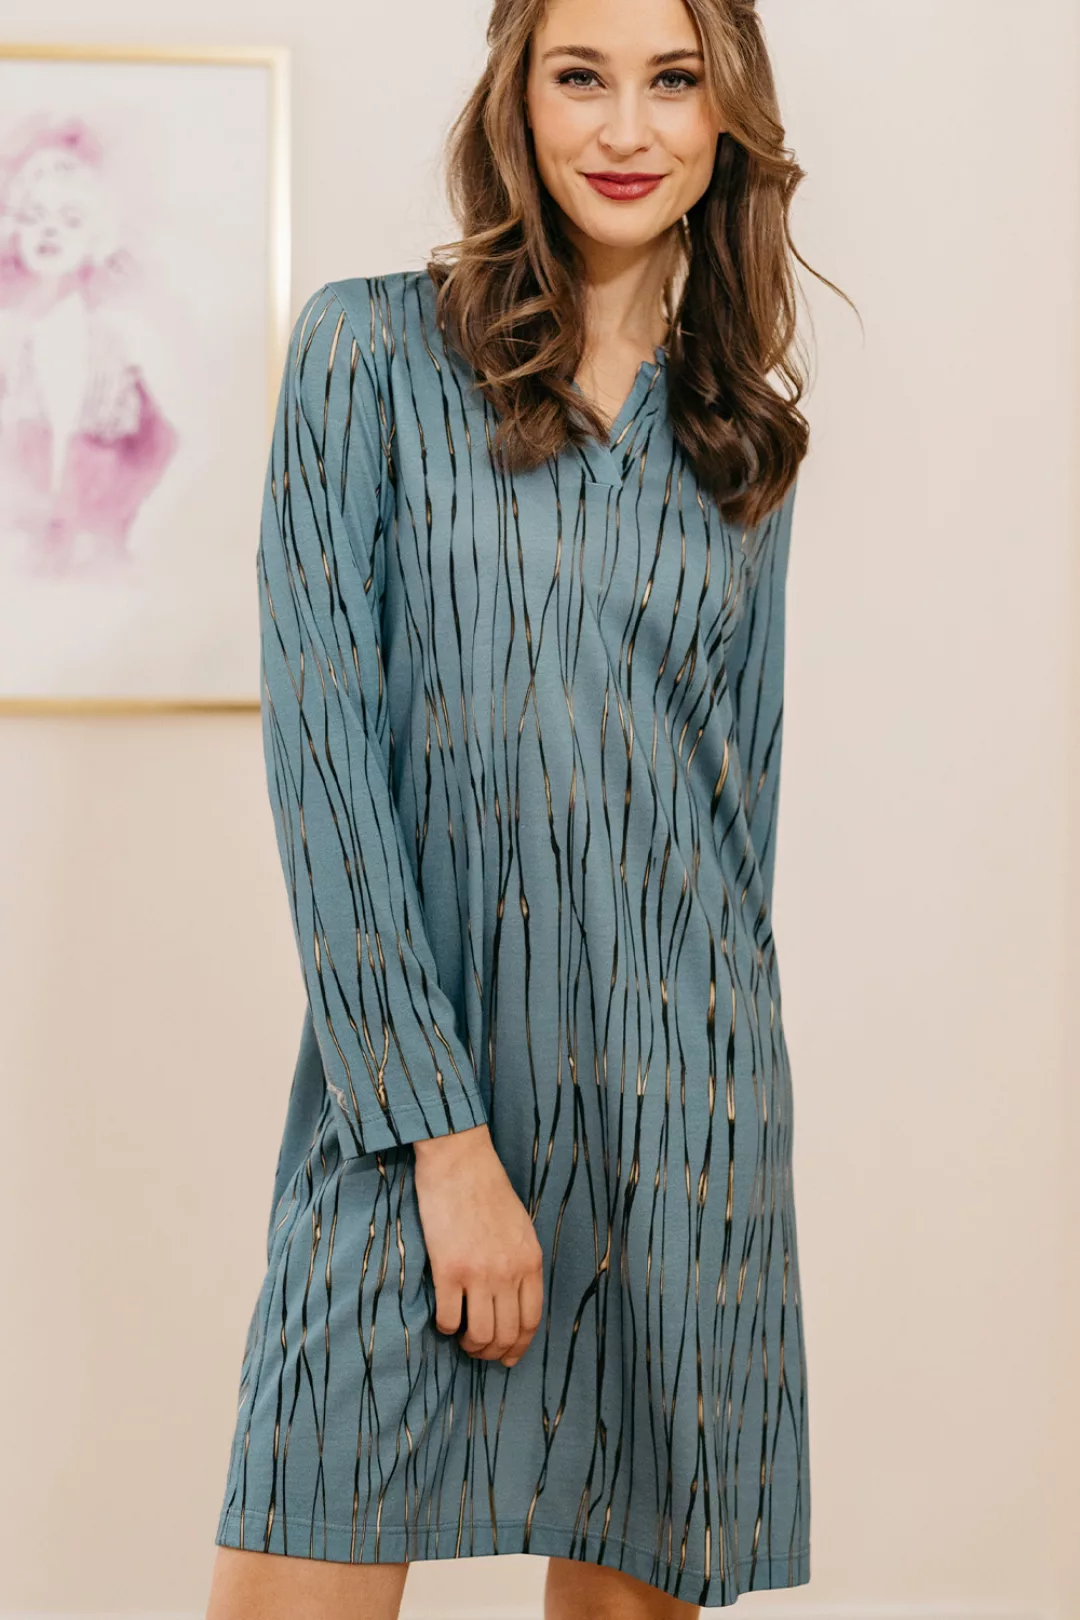 Hutschreuther Kleid One Collection 38 mehrfarbig günstig online kaufen